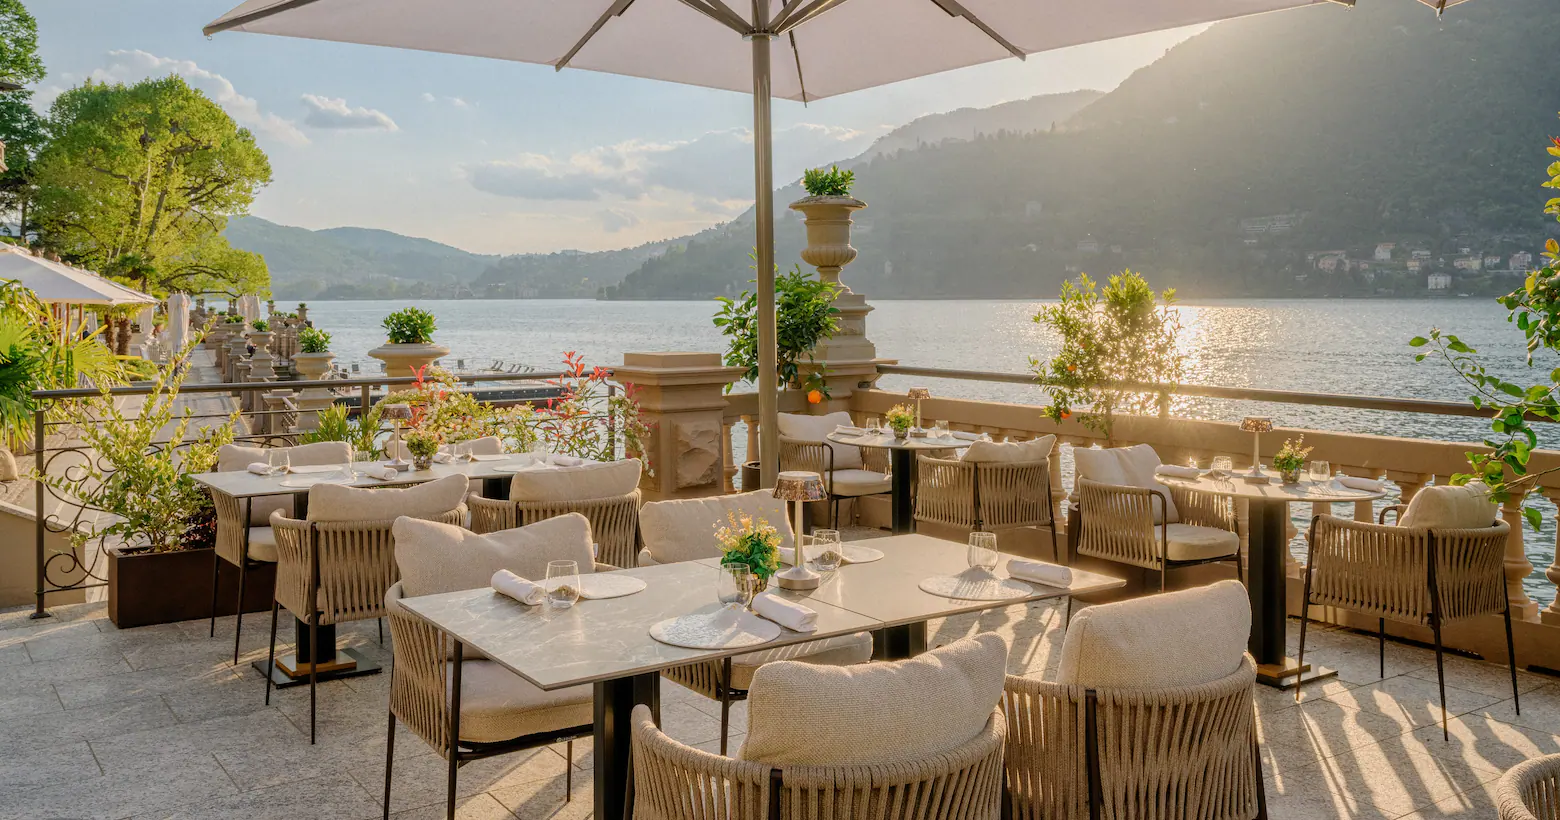 Some Tables Under An Umbrella At Lake Como